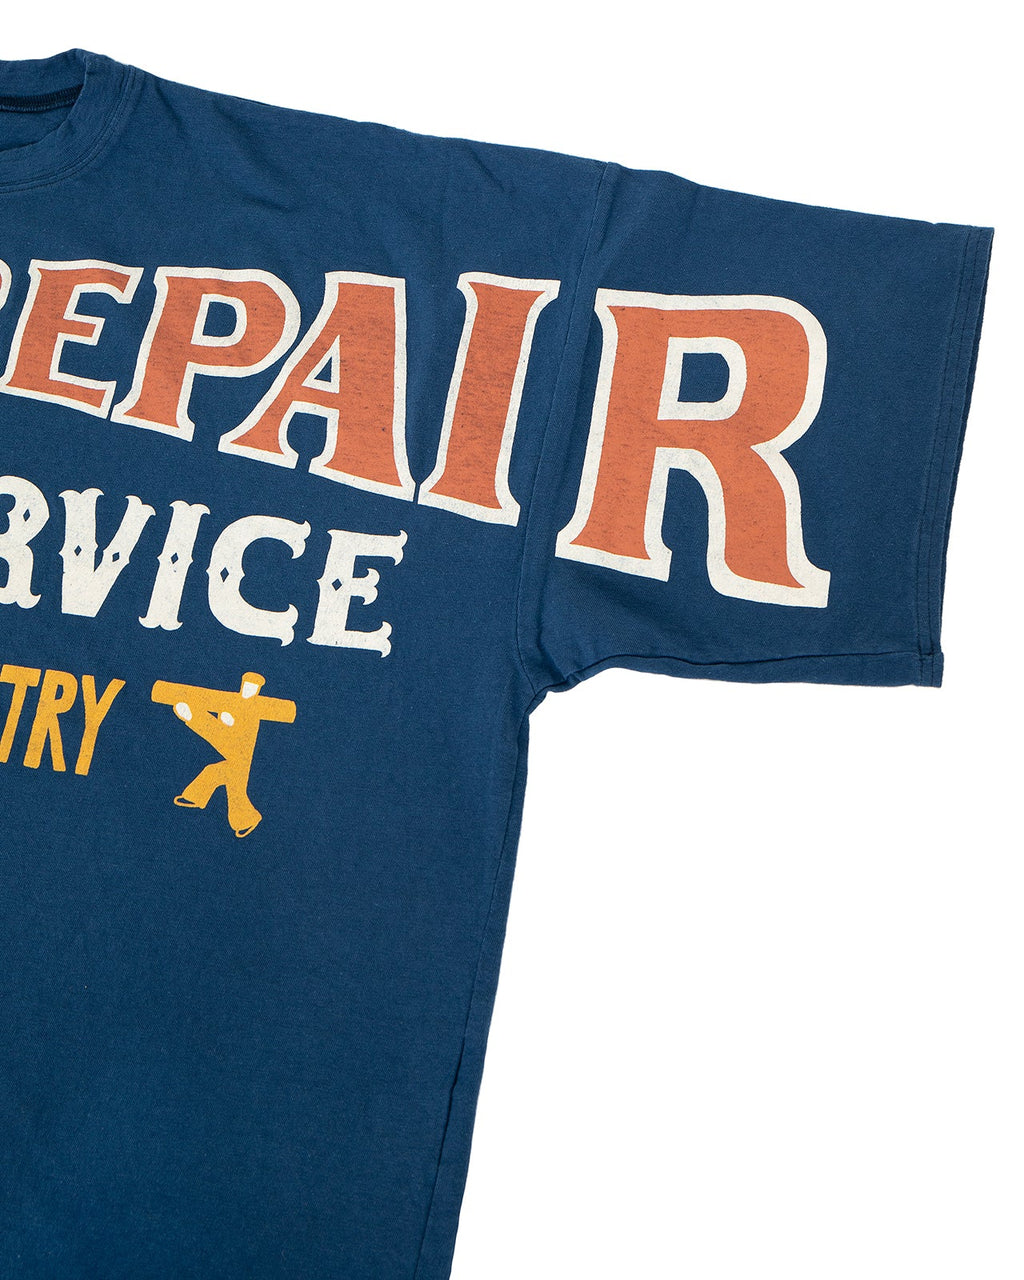 Kapital Jersey Huge T-Shirt, Denim Repair, Navy